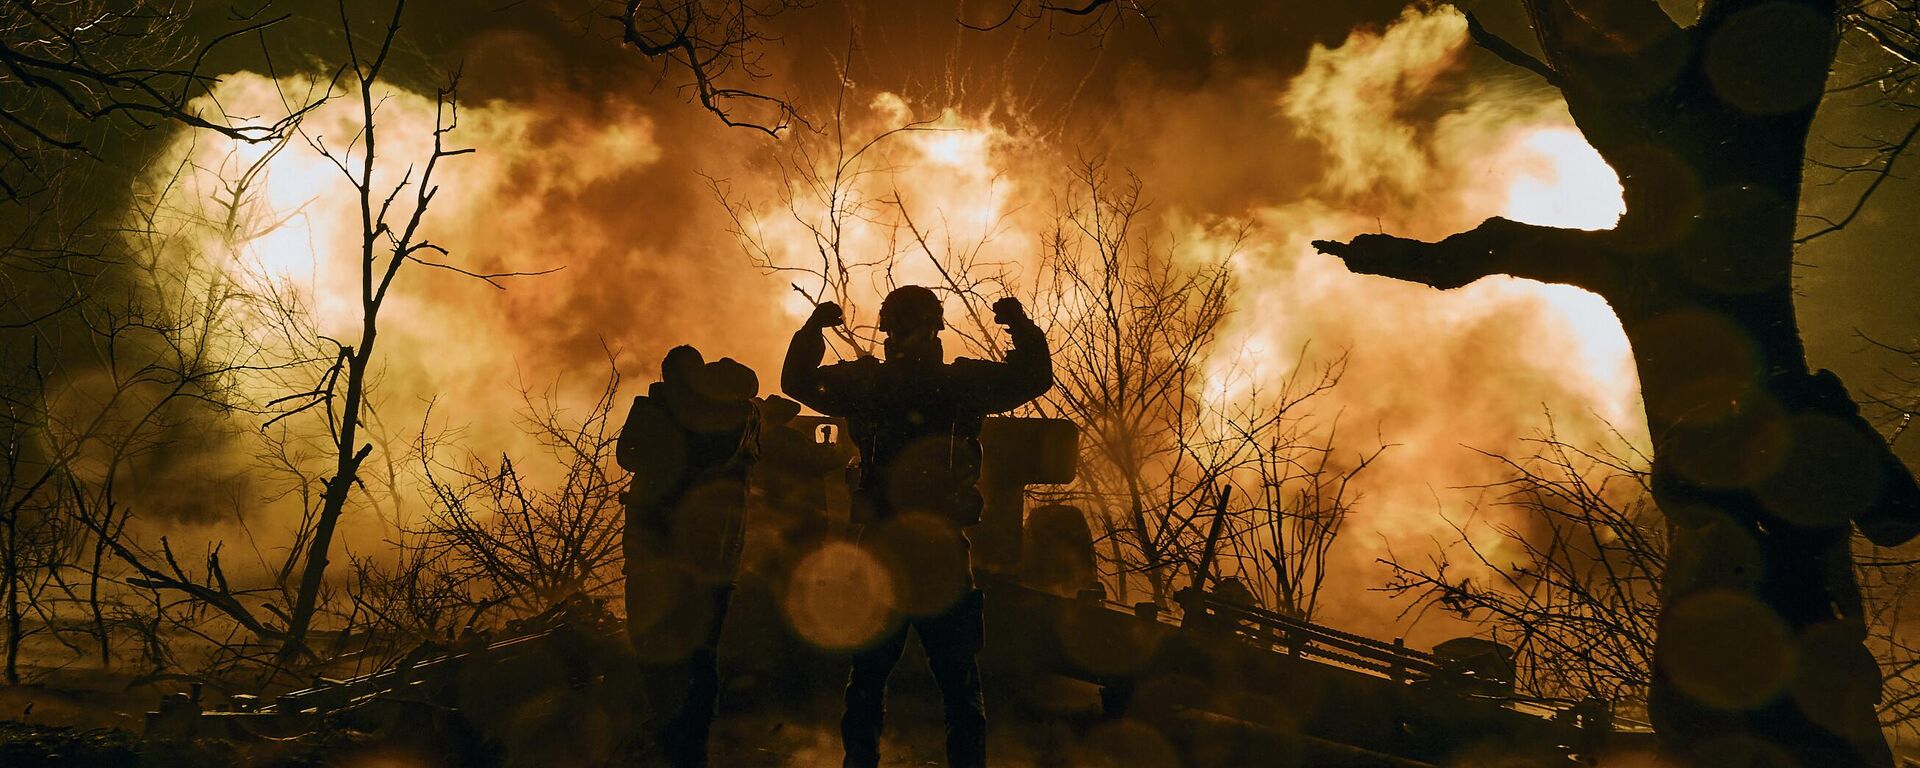  جنود أوكرانيون يطلقون نيران المدفعية على مواقع روسية بالقرب من باخموت في منطقة دونيتسك، 20 نوفمبر 2022.  - سبوتنيك عربي, 1920, 18.03.2023